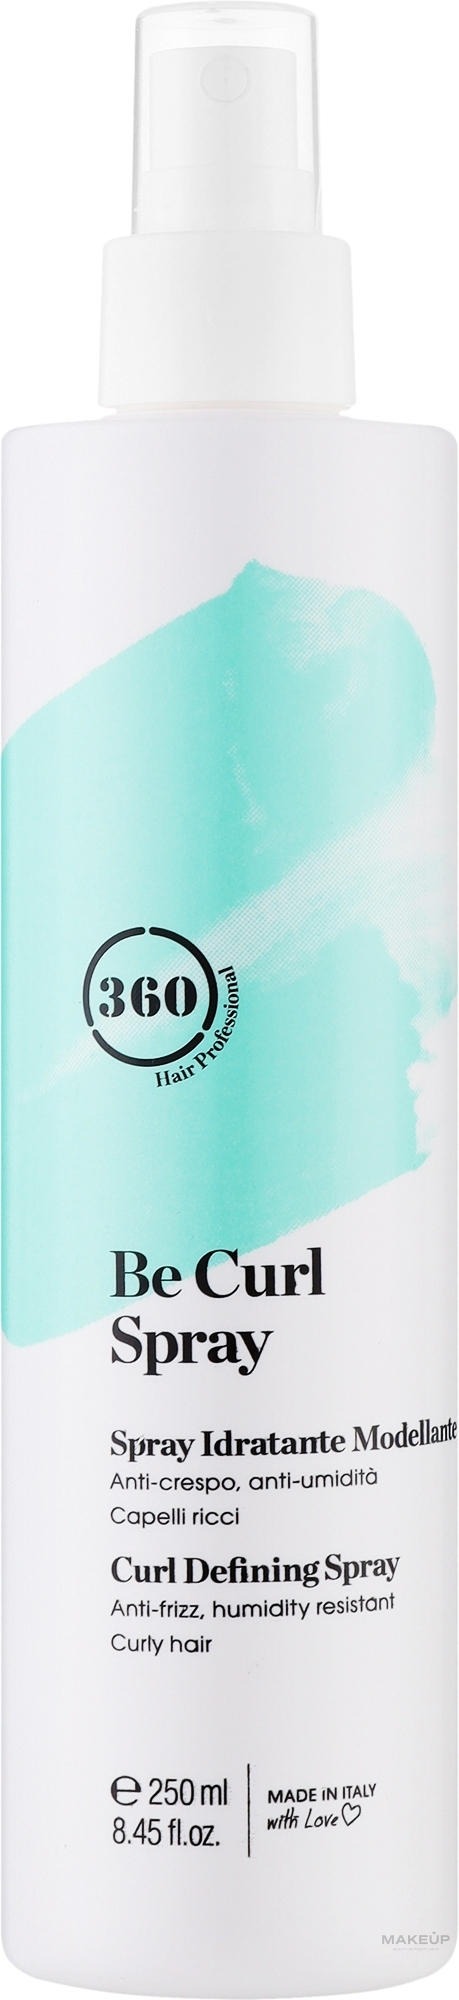 Спрей для укладання виткого волосся з антифриз-ефектом - 360 Be Curl Spray — фото 250ml